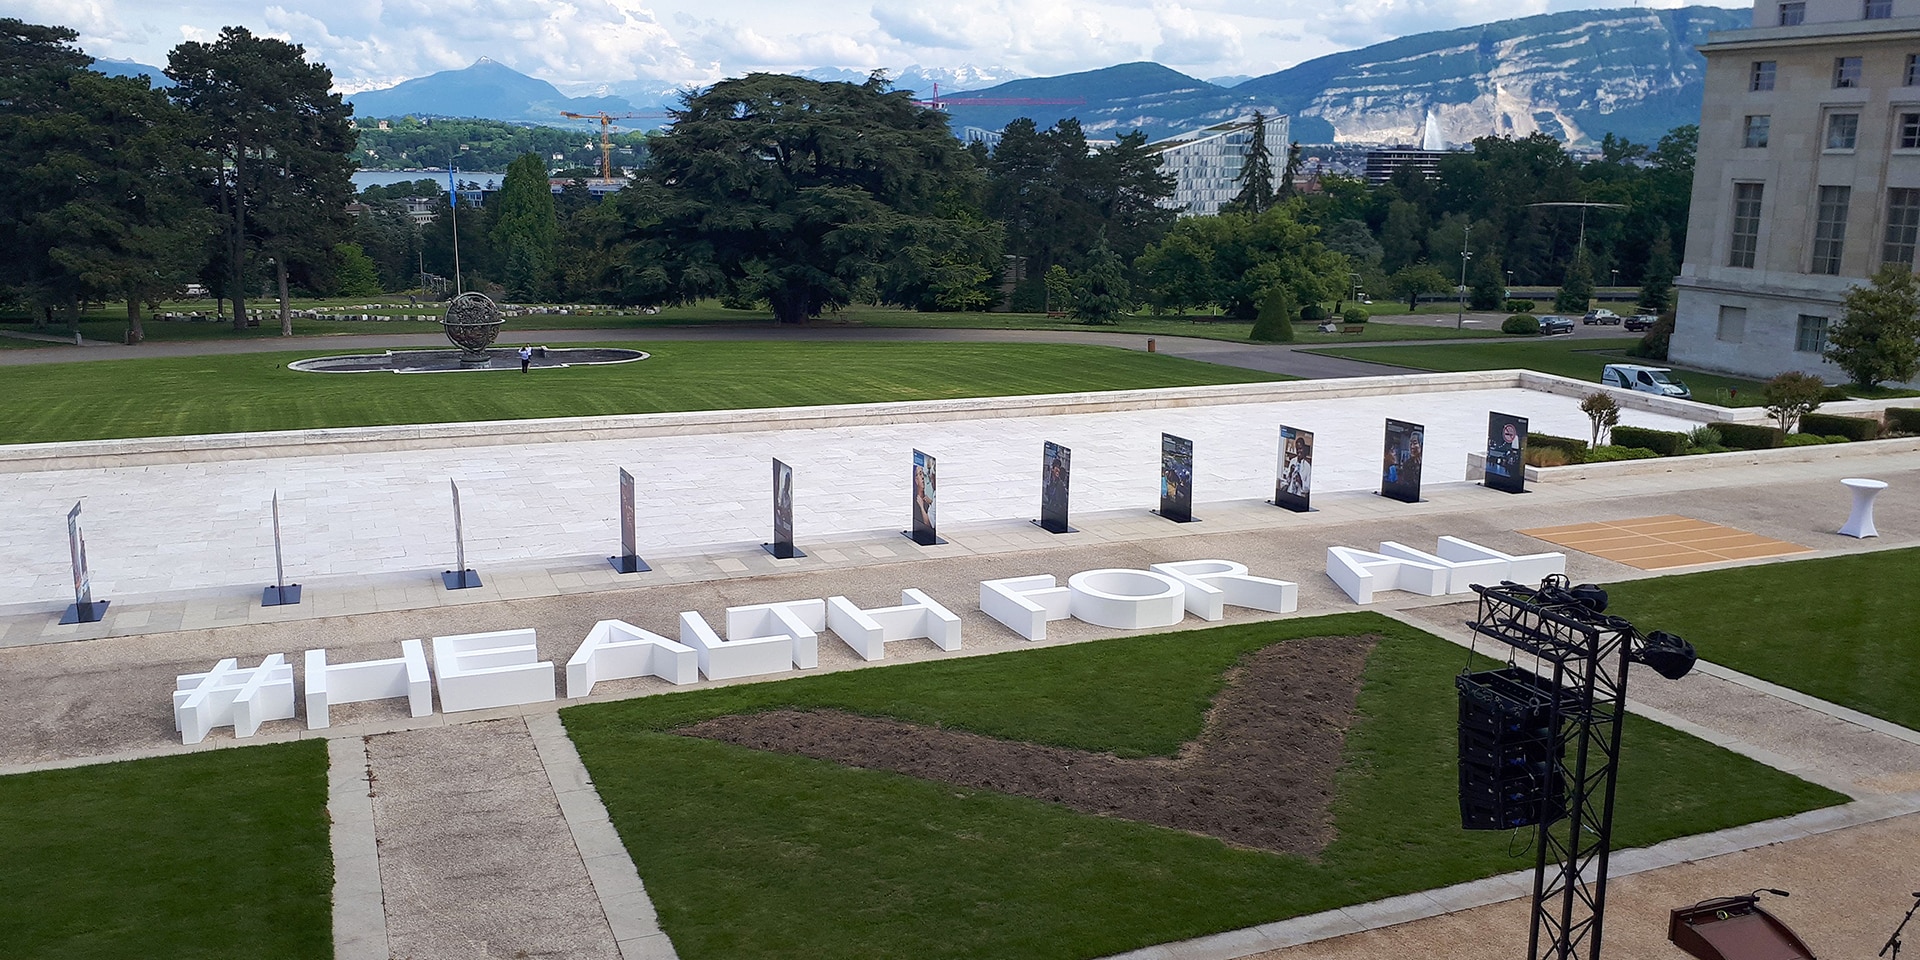 Sul prato di fronte all’edificio delle Nazioni Unite a Ginevra appare in grande la scritta #healthforall.